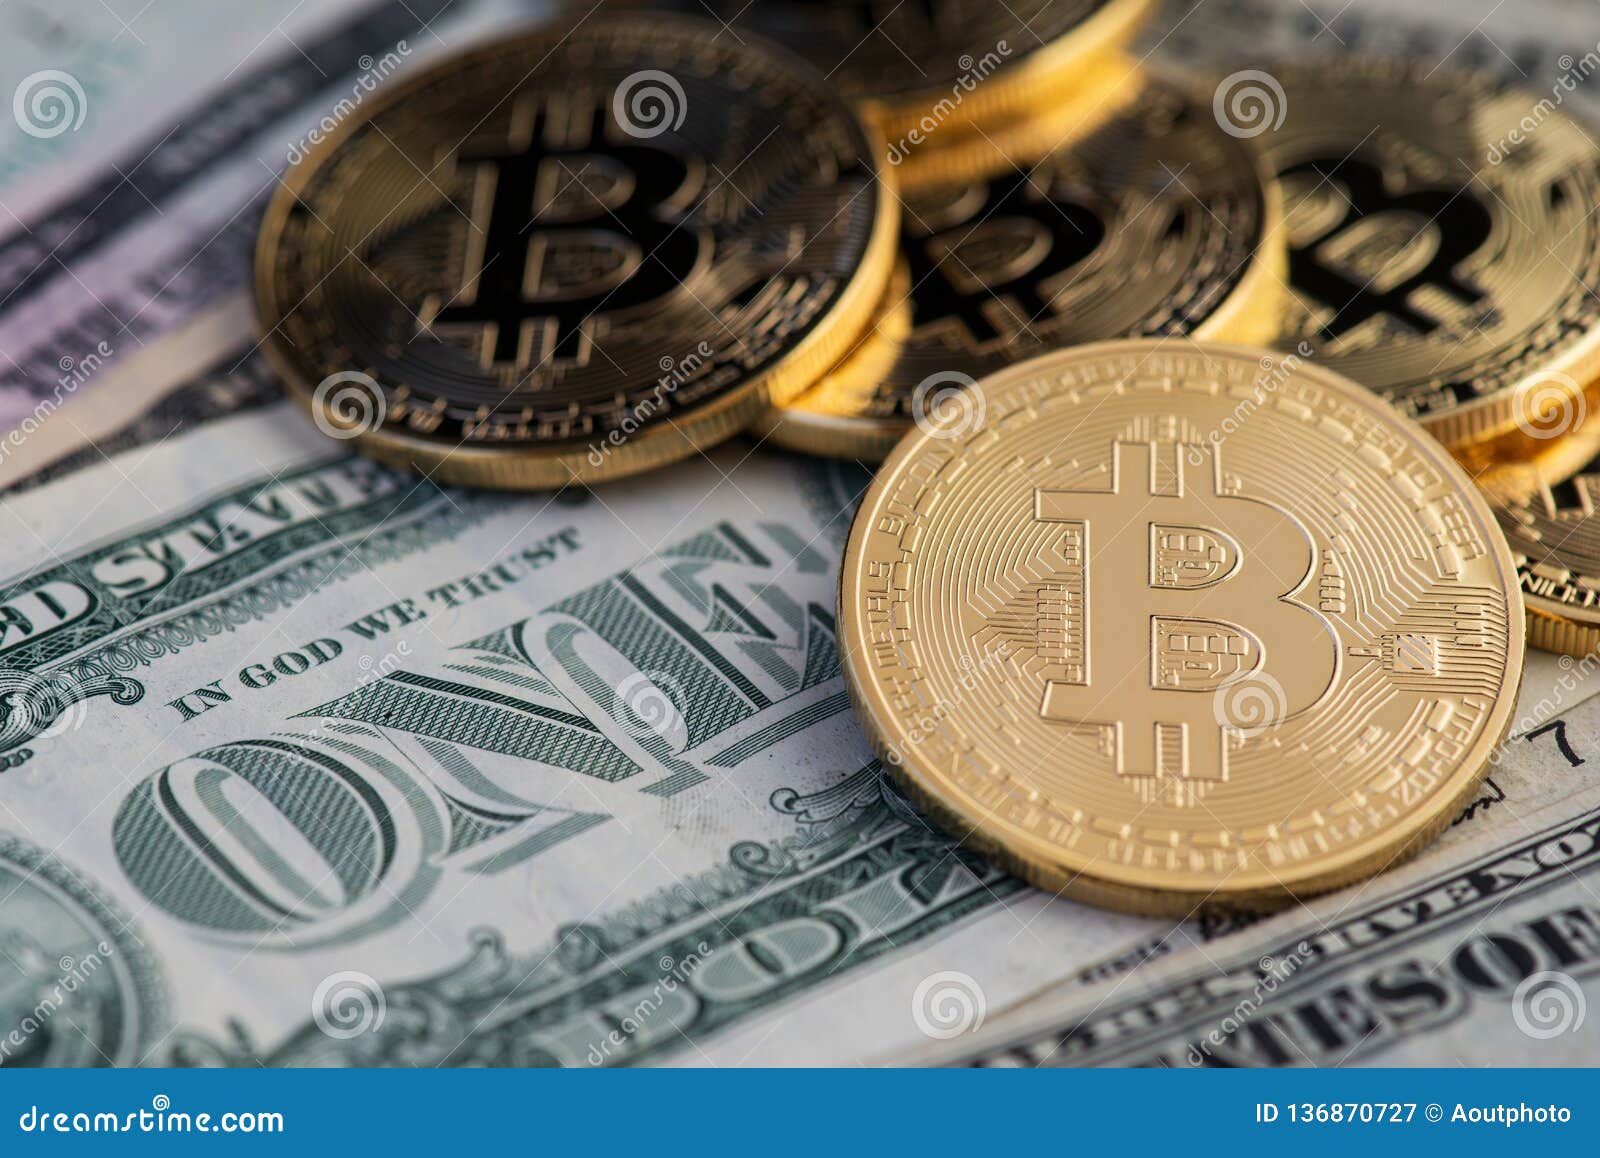 1 bitcoin to dollar 2019